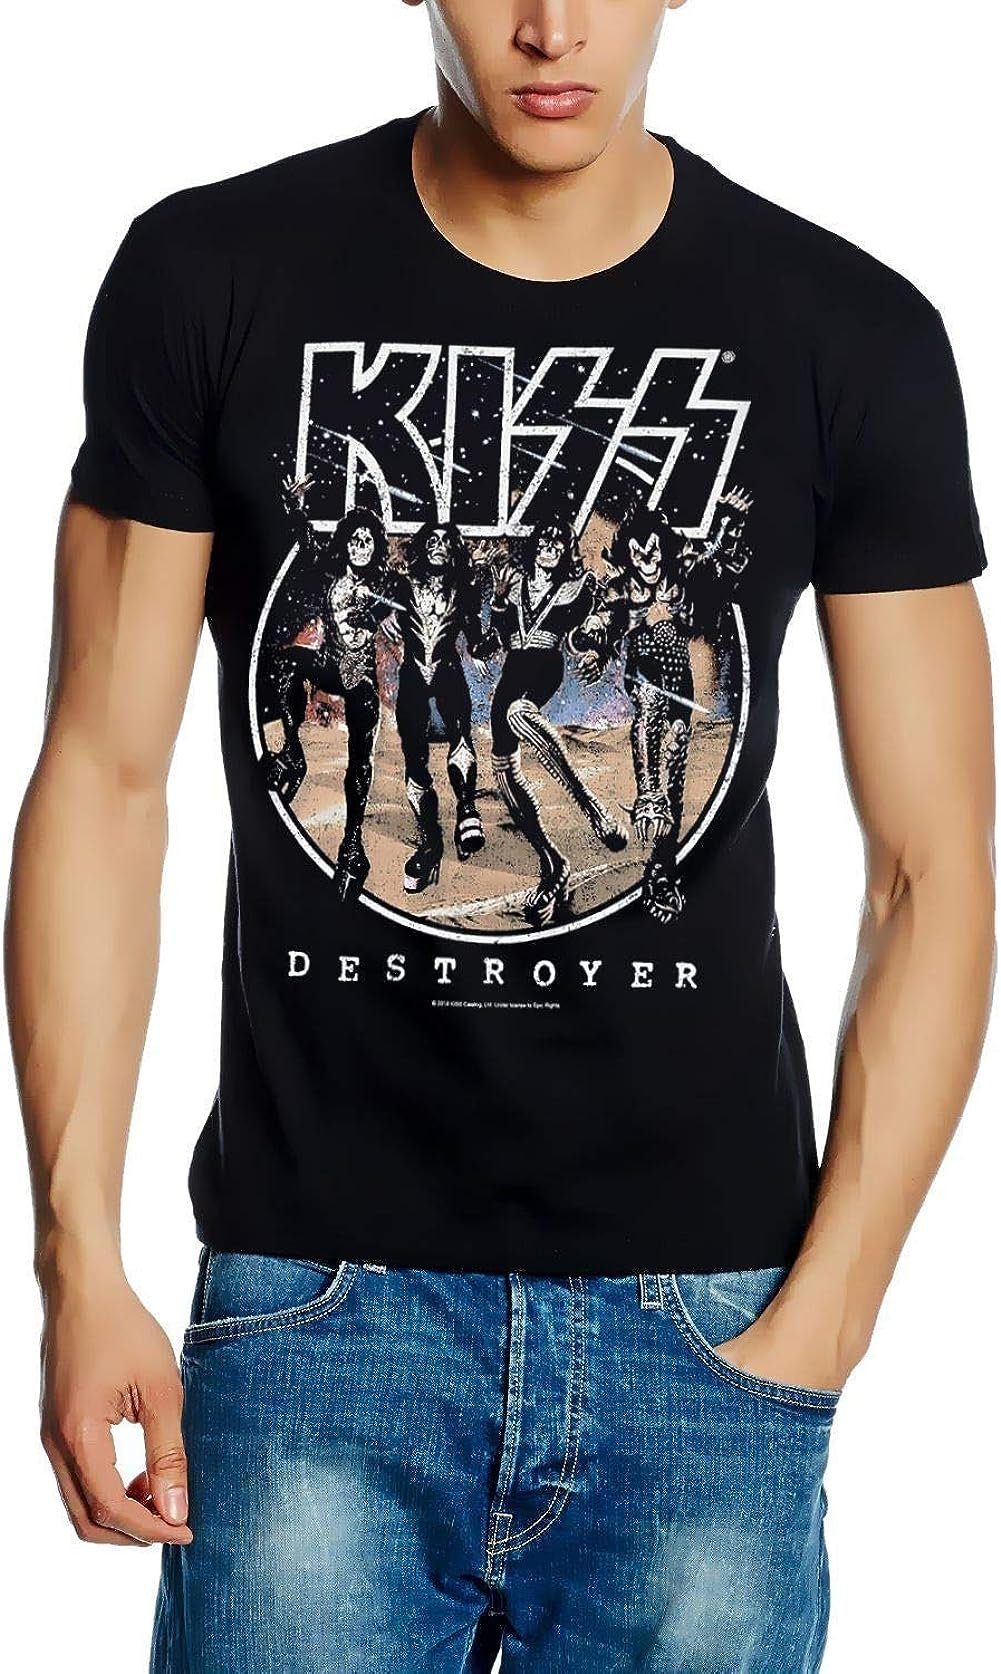 S M coole-fun-t-shirts Print-Shirt L Destroyer XL T-Shirt Bandshirt KISS Herren